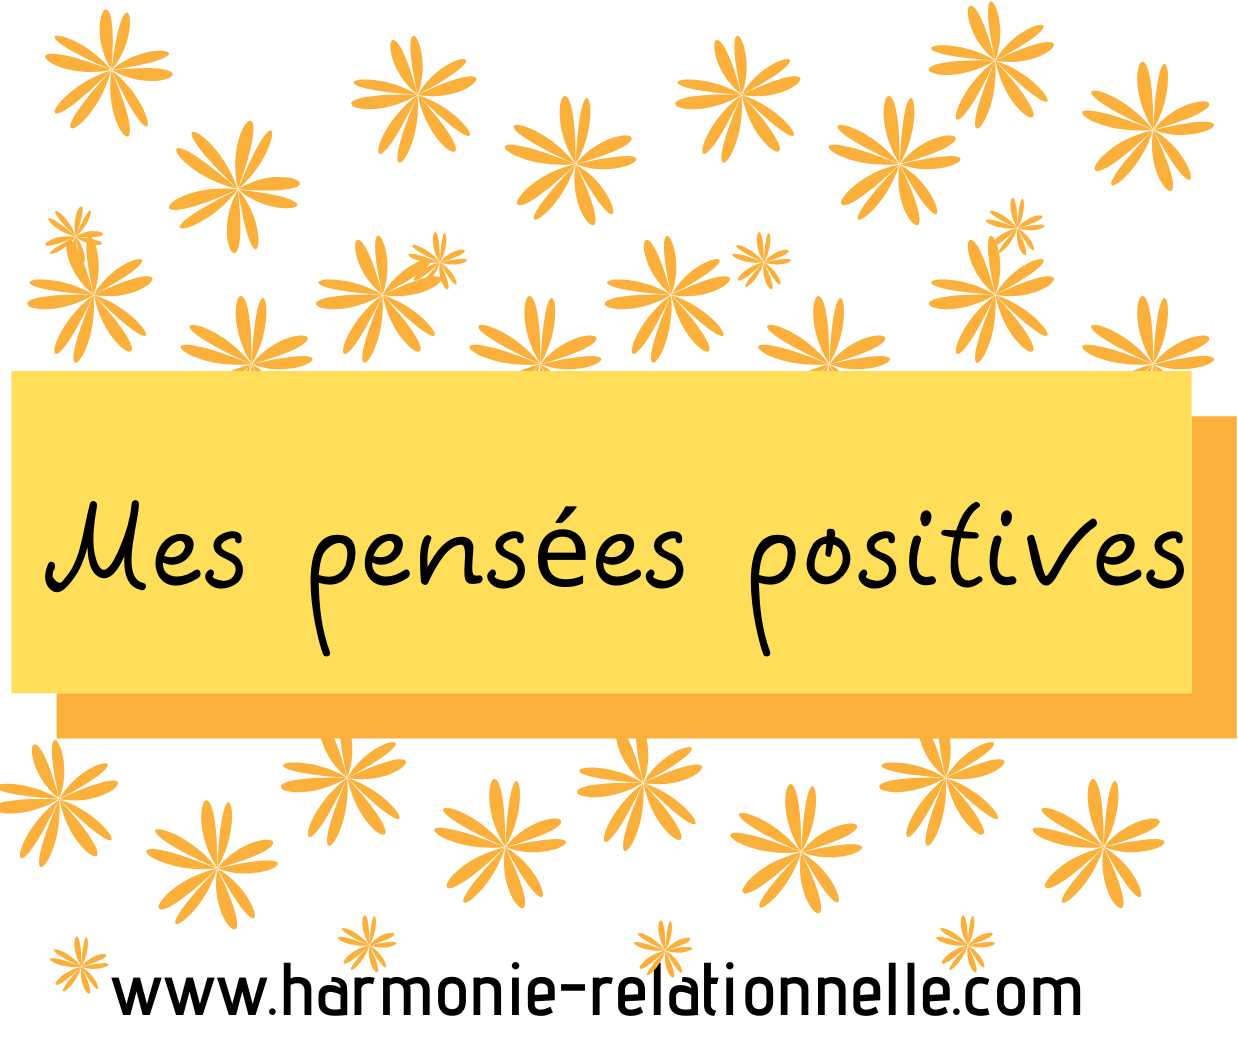 Gratitude - Carnet des pensées positives - Marilyne Théry www.harmonie-relationnelle.com